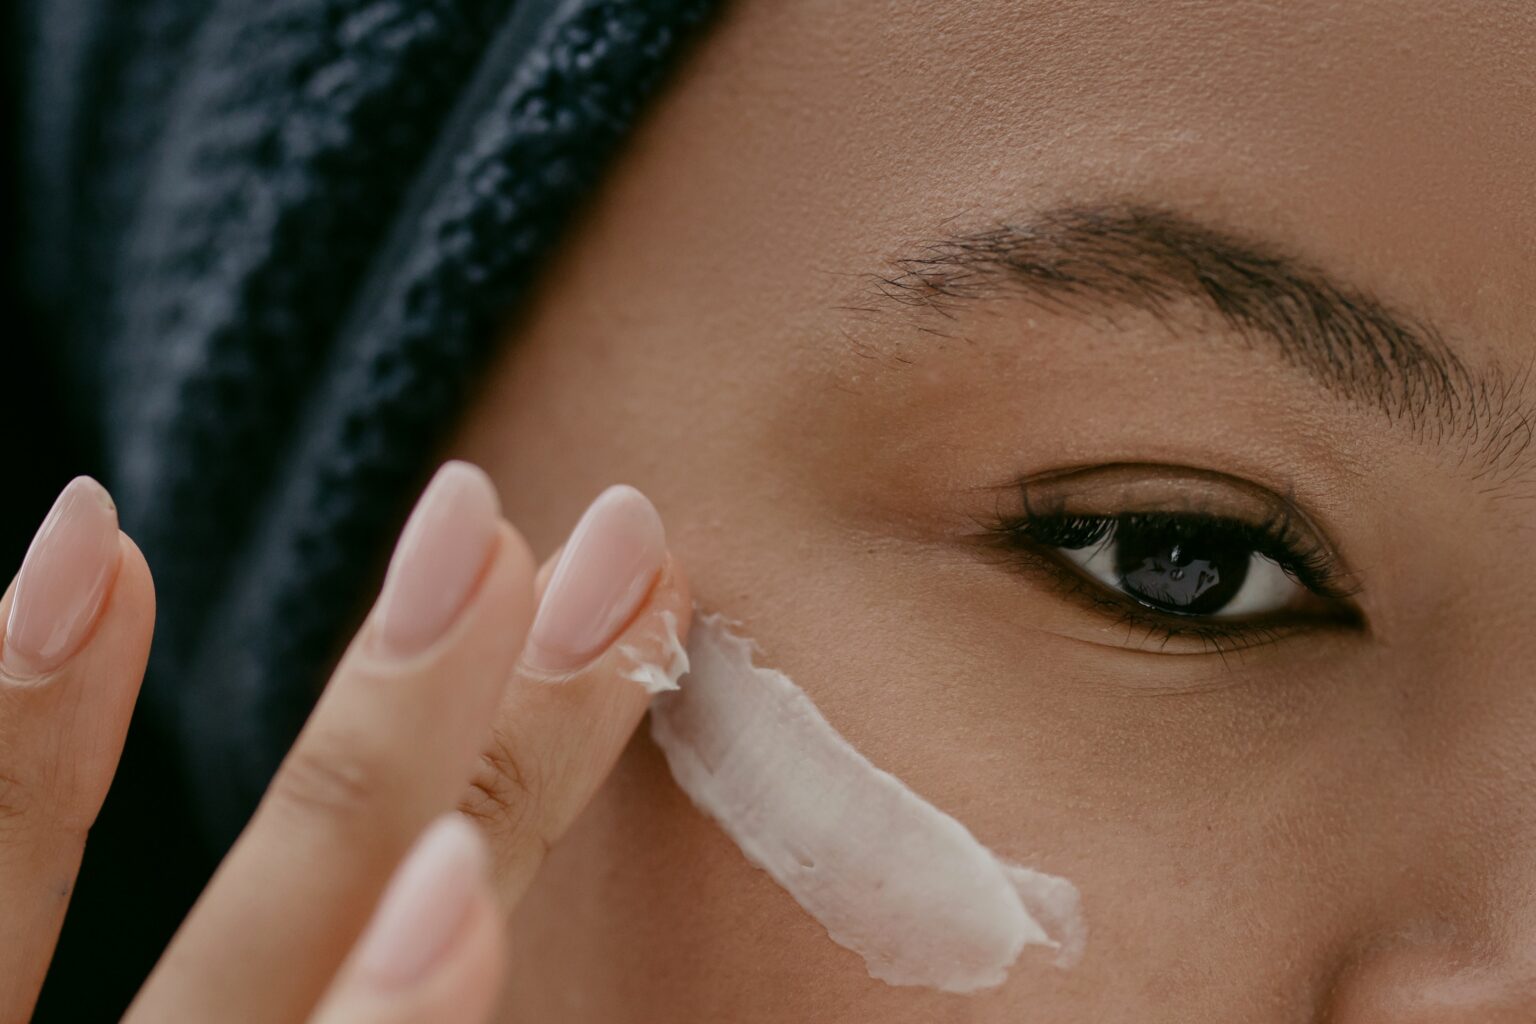 rzeszów concept 13 sklep kosmetcznych serum pod oczy krem pod oczy przeciwzmarszczkowy wielorazowe płatki kosmetyczne jka stosować jak używać